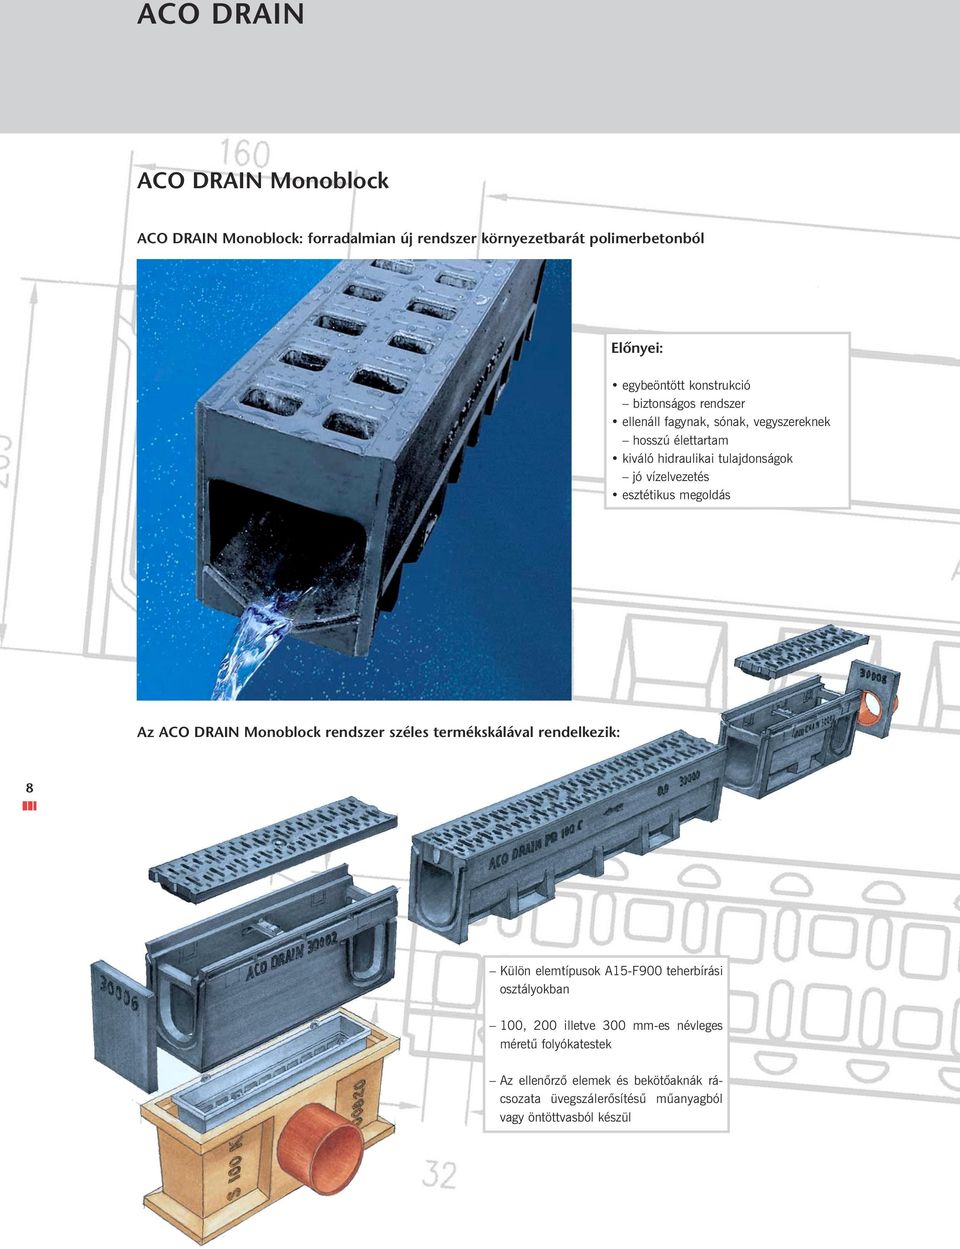 megoldás Az ACO DRAIN Monoblock rendszer széles termékskálával rendelkezik: 8 Külön elemtípusok A15-F900 teherbírási osztályokban 100, 200